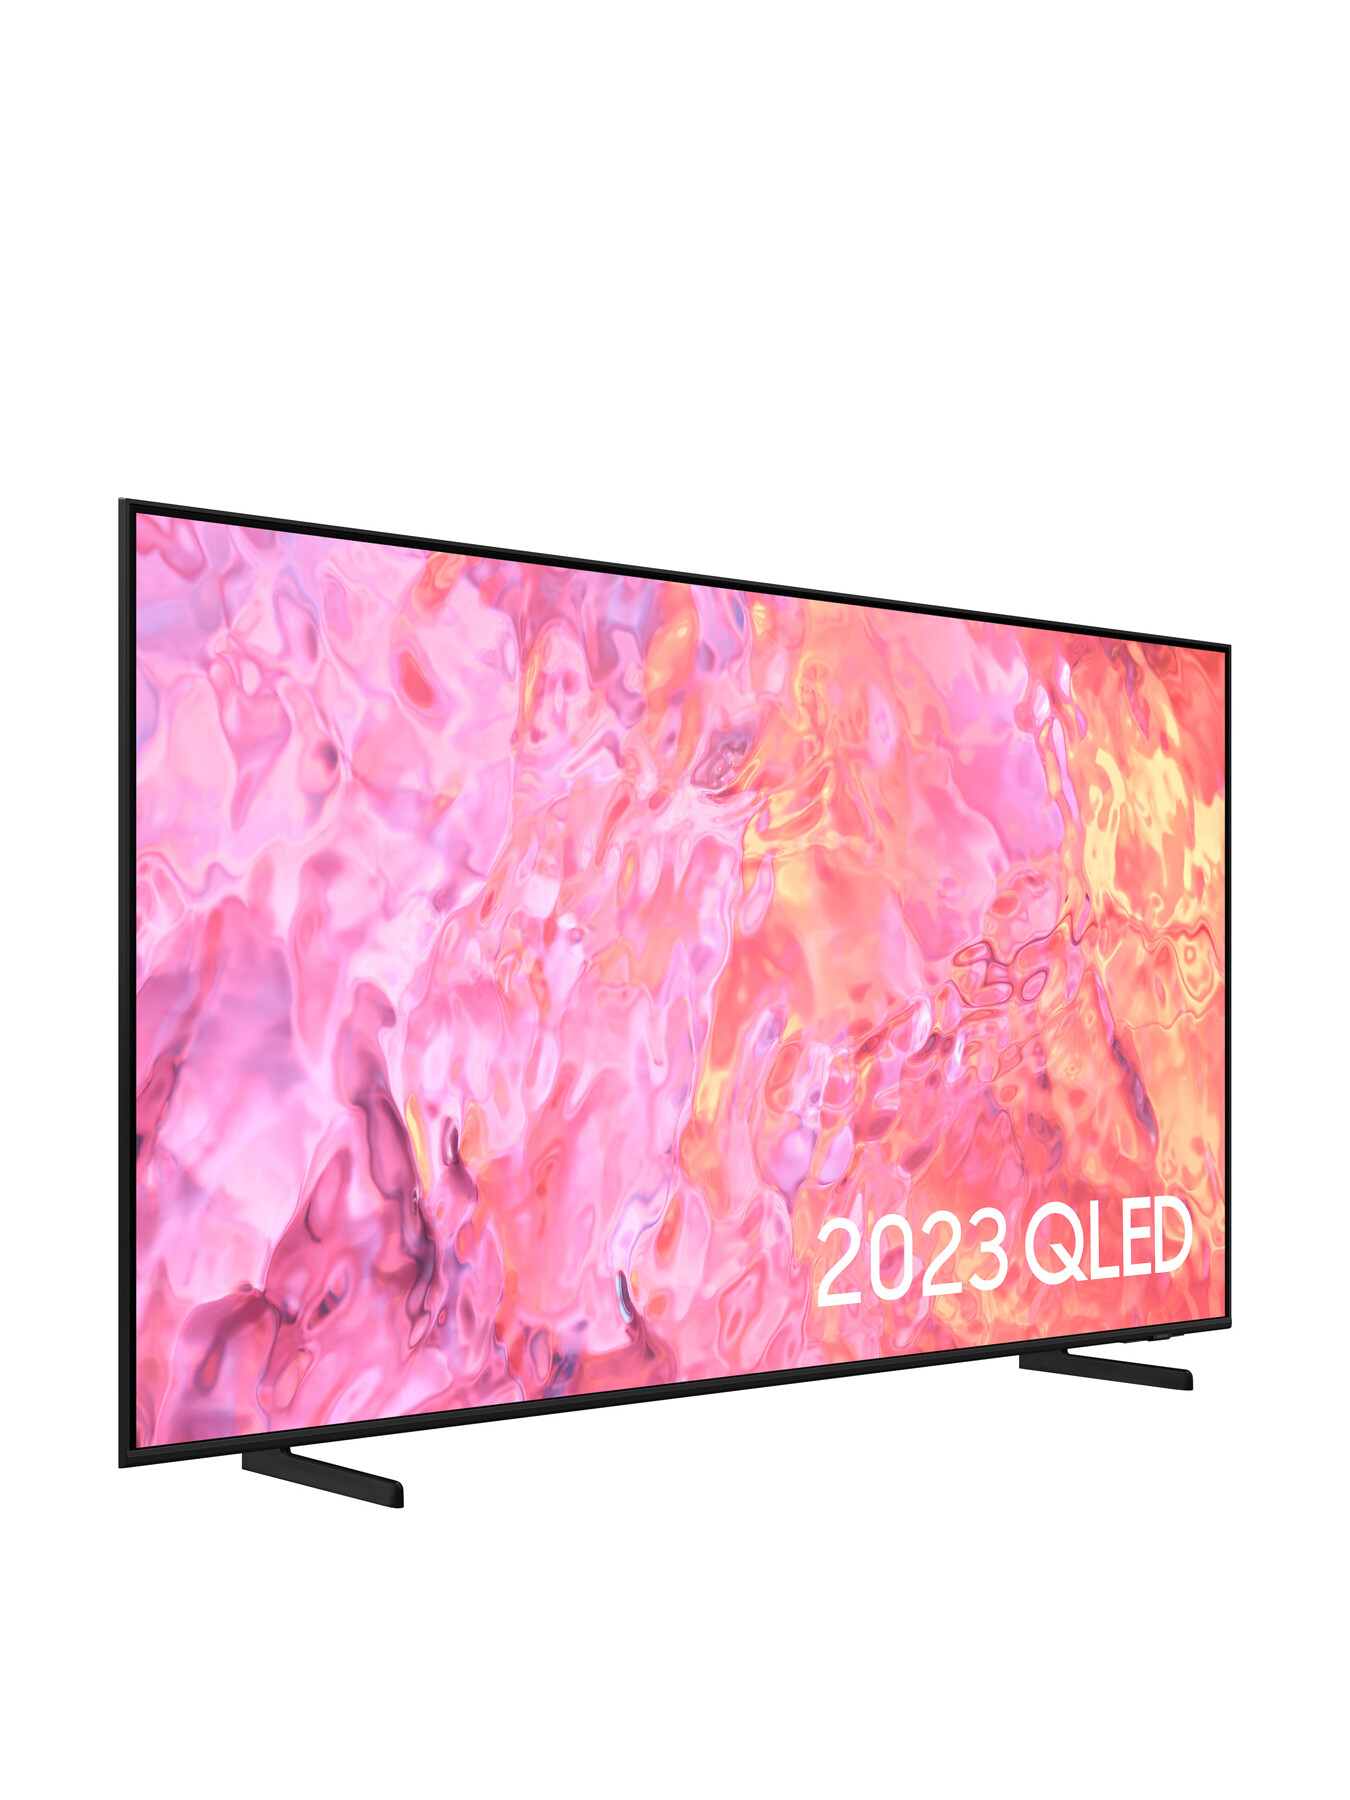 Samsung QE55Q60 QLED HDR 4k Smart TV 55 Inch (2023) | Fenwick